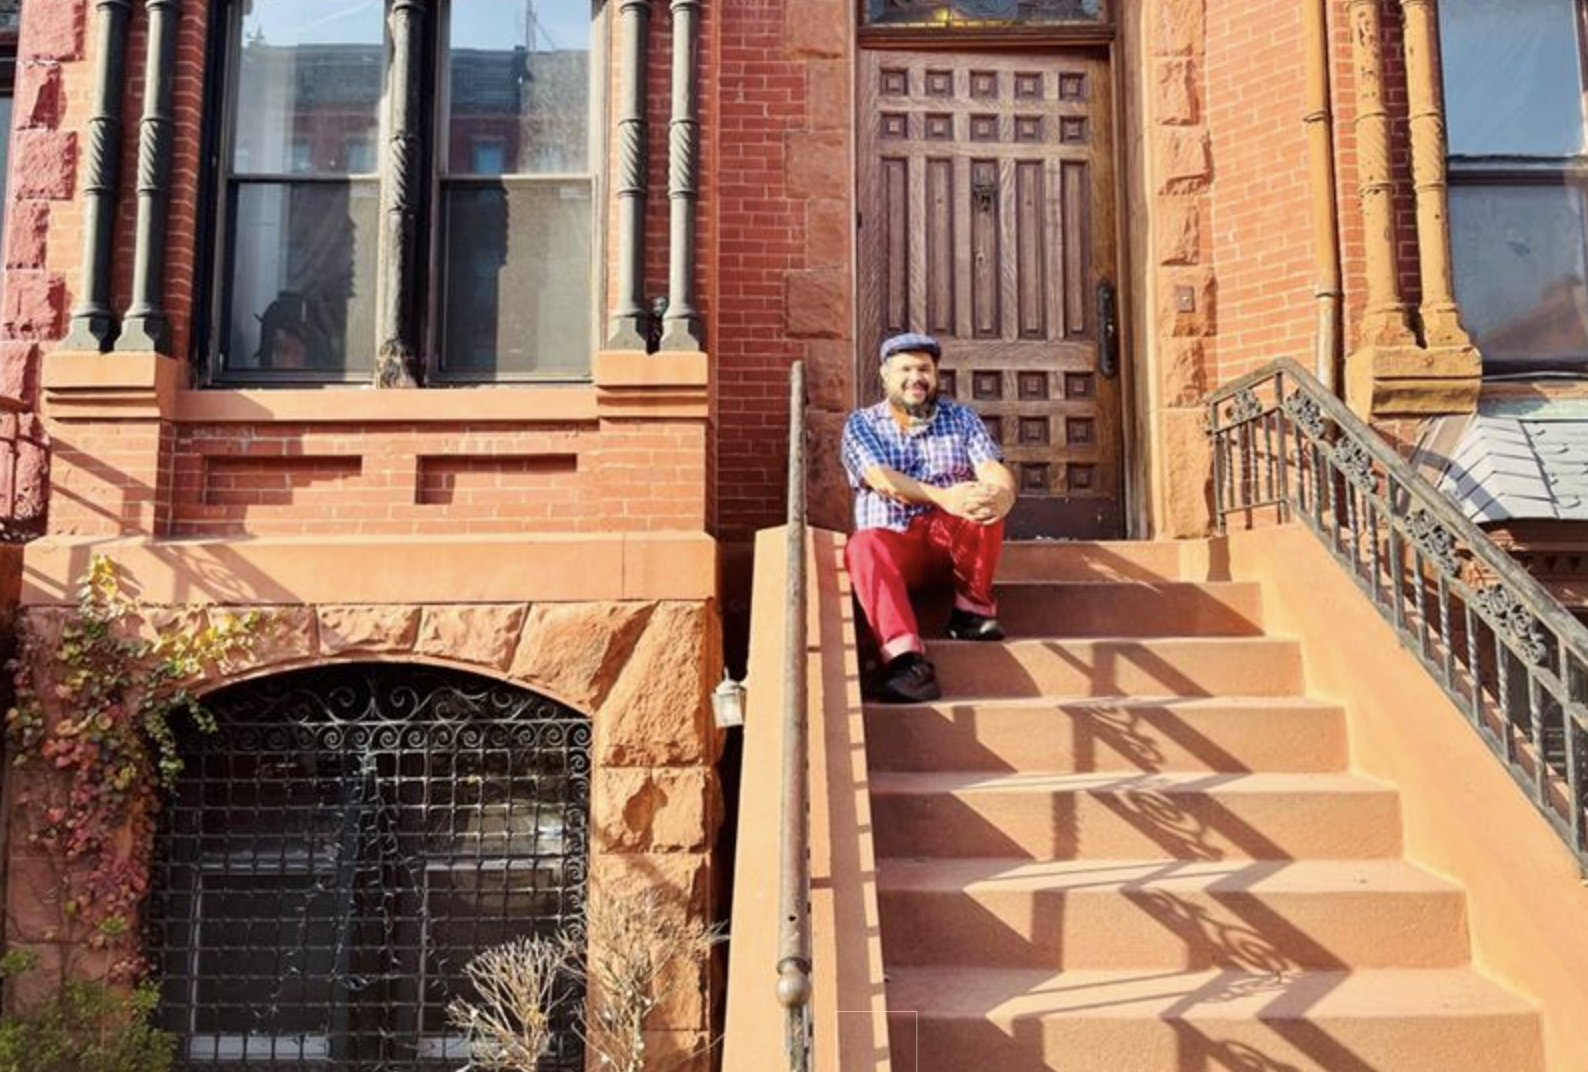 Monxo López sentado na escada em frente a uma casa de arenito